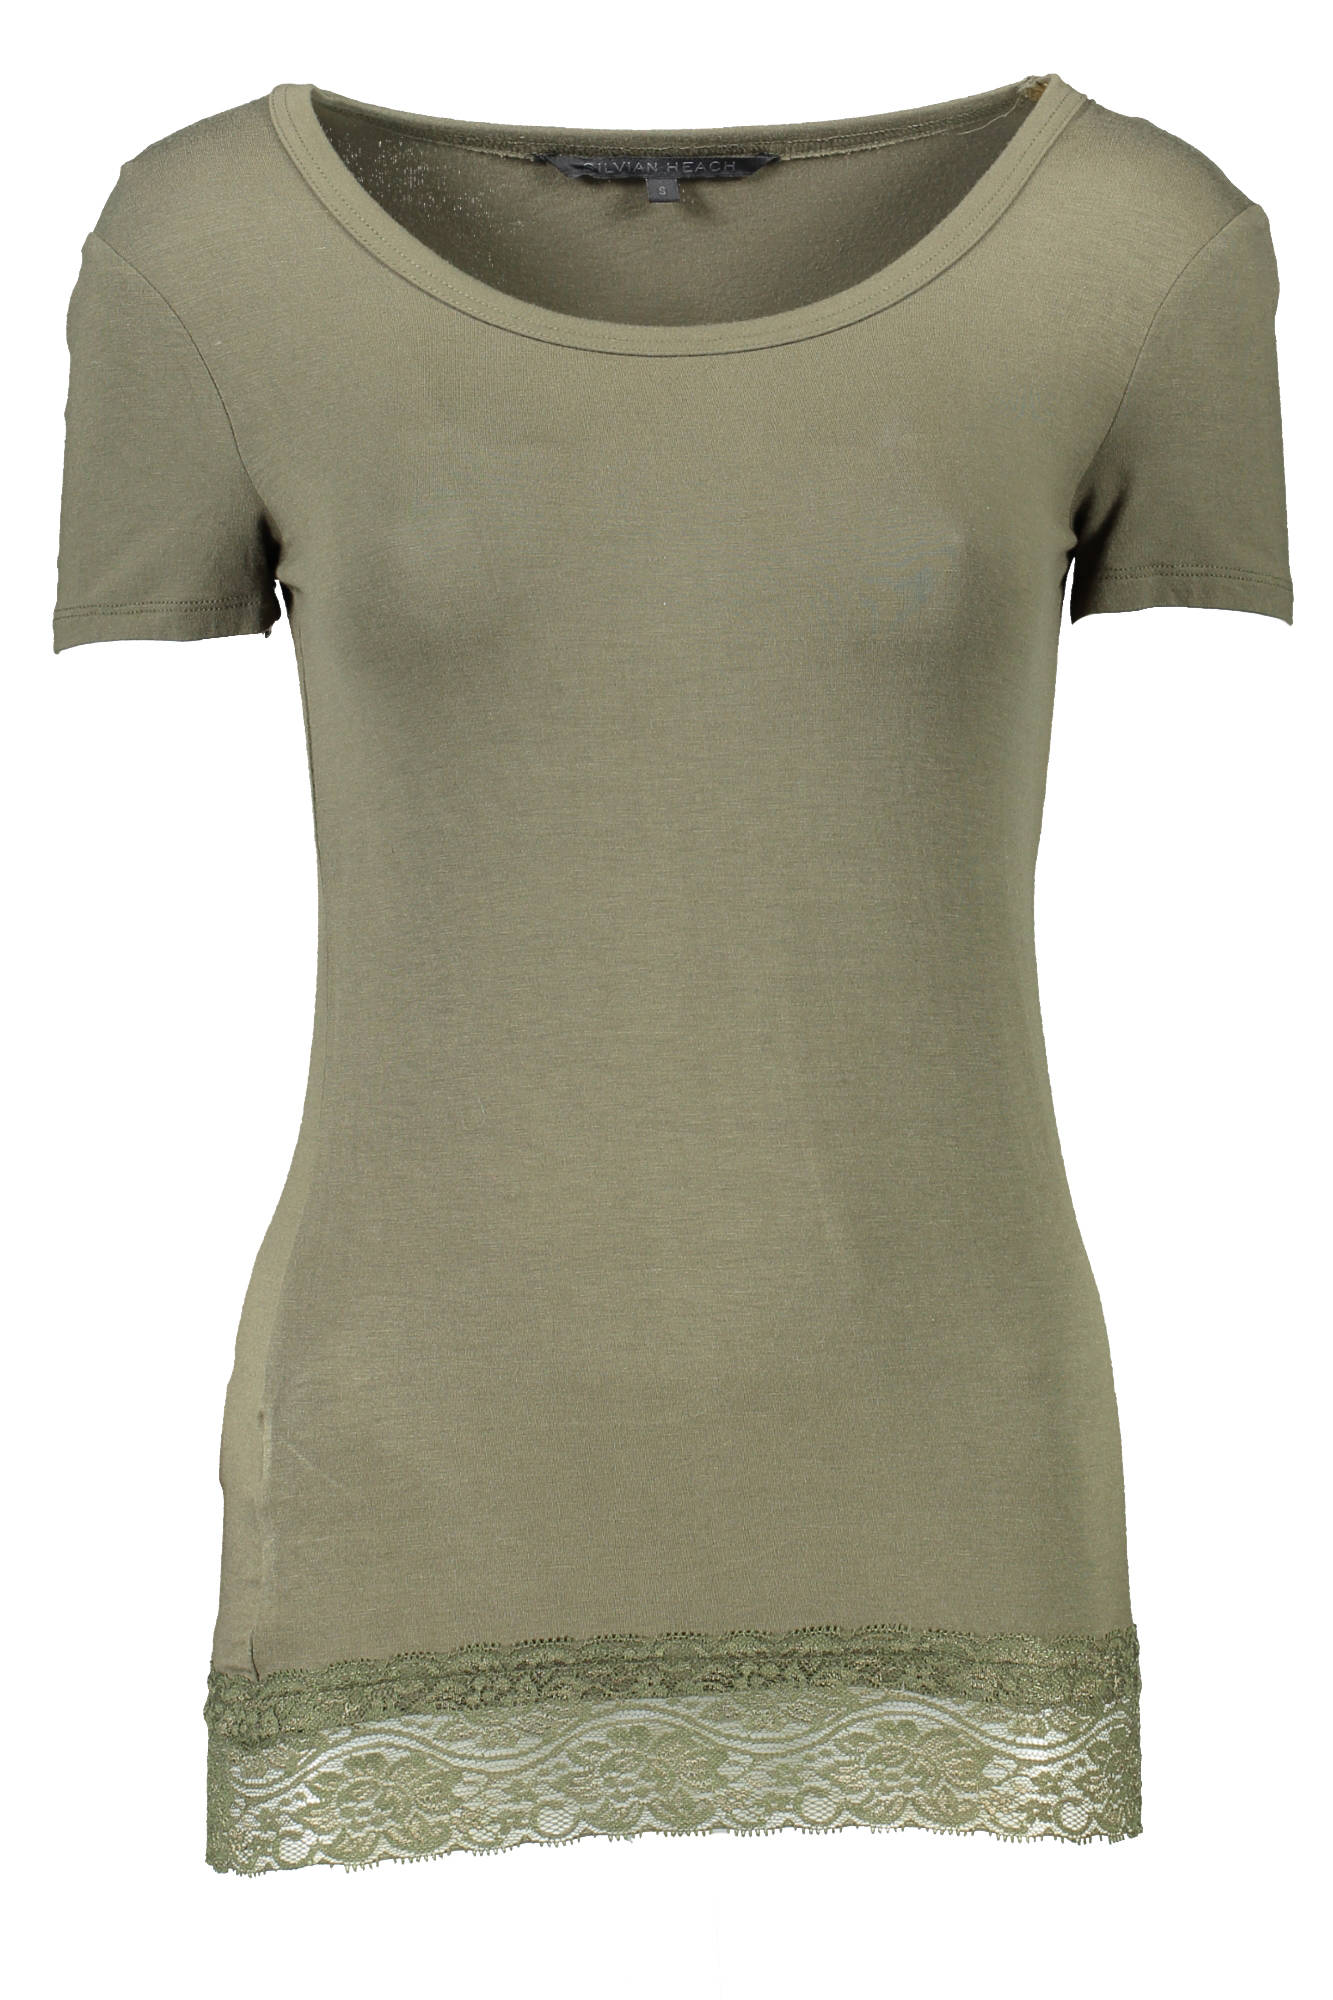 Silvian Heach Green Tops & T-Shirt - Fizigo